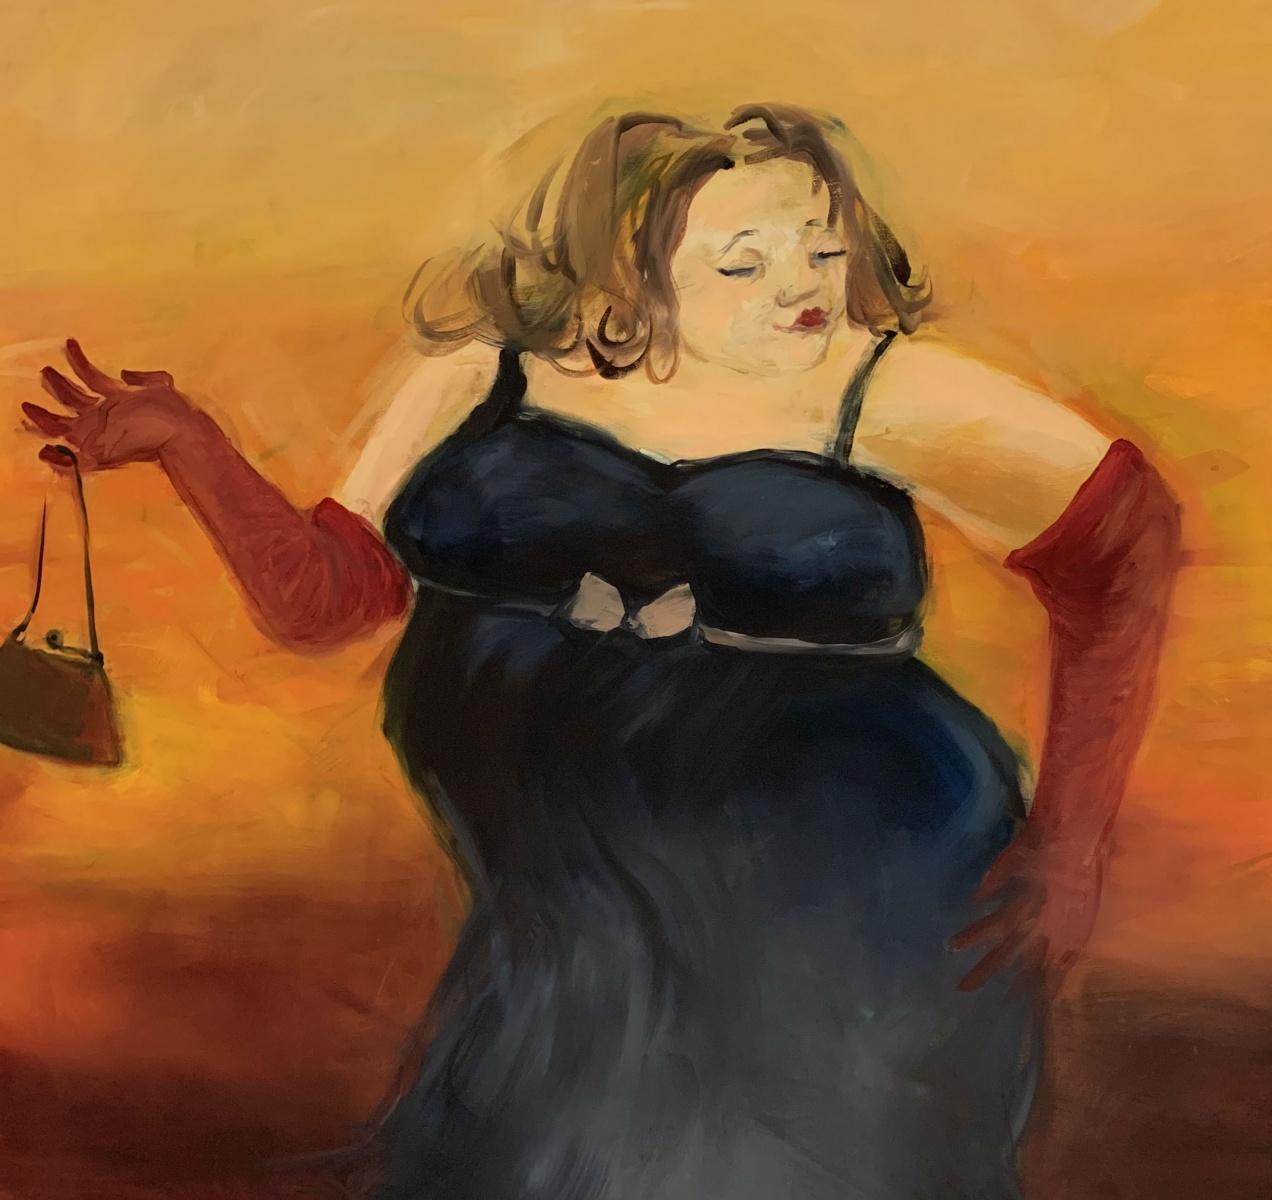 Zeitgenössisches figuratives Ölgemälde einer Dame, warme Töne, monochrom – Painting von Monika Rossa